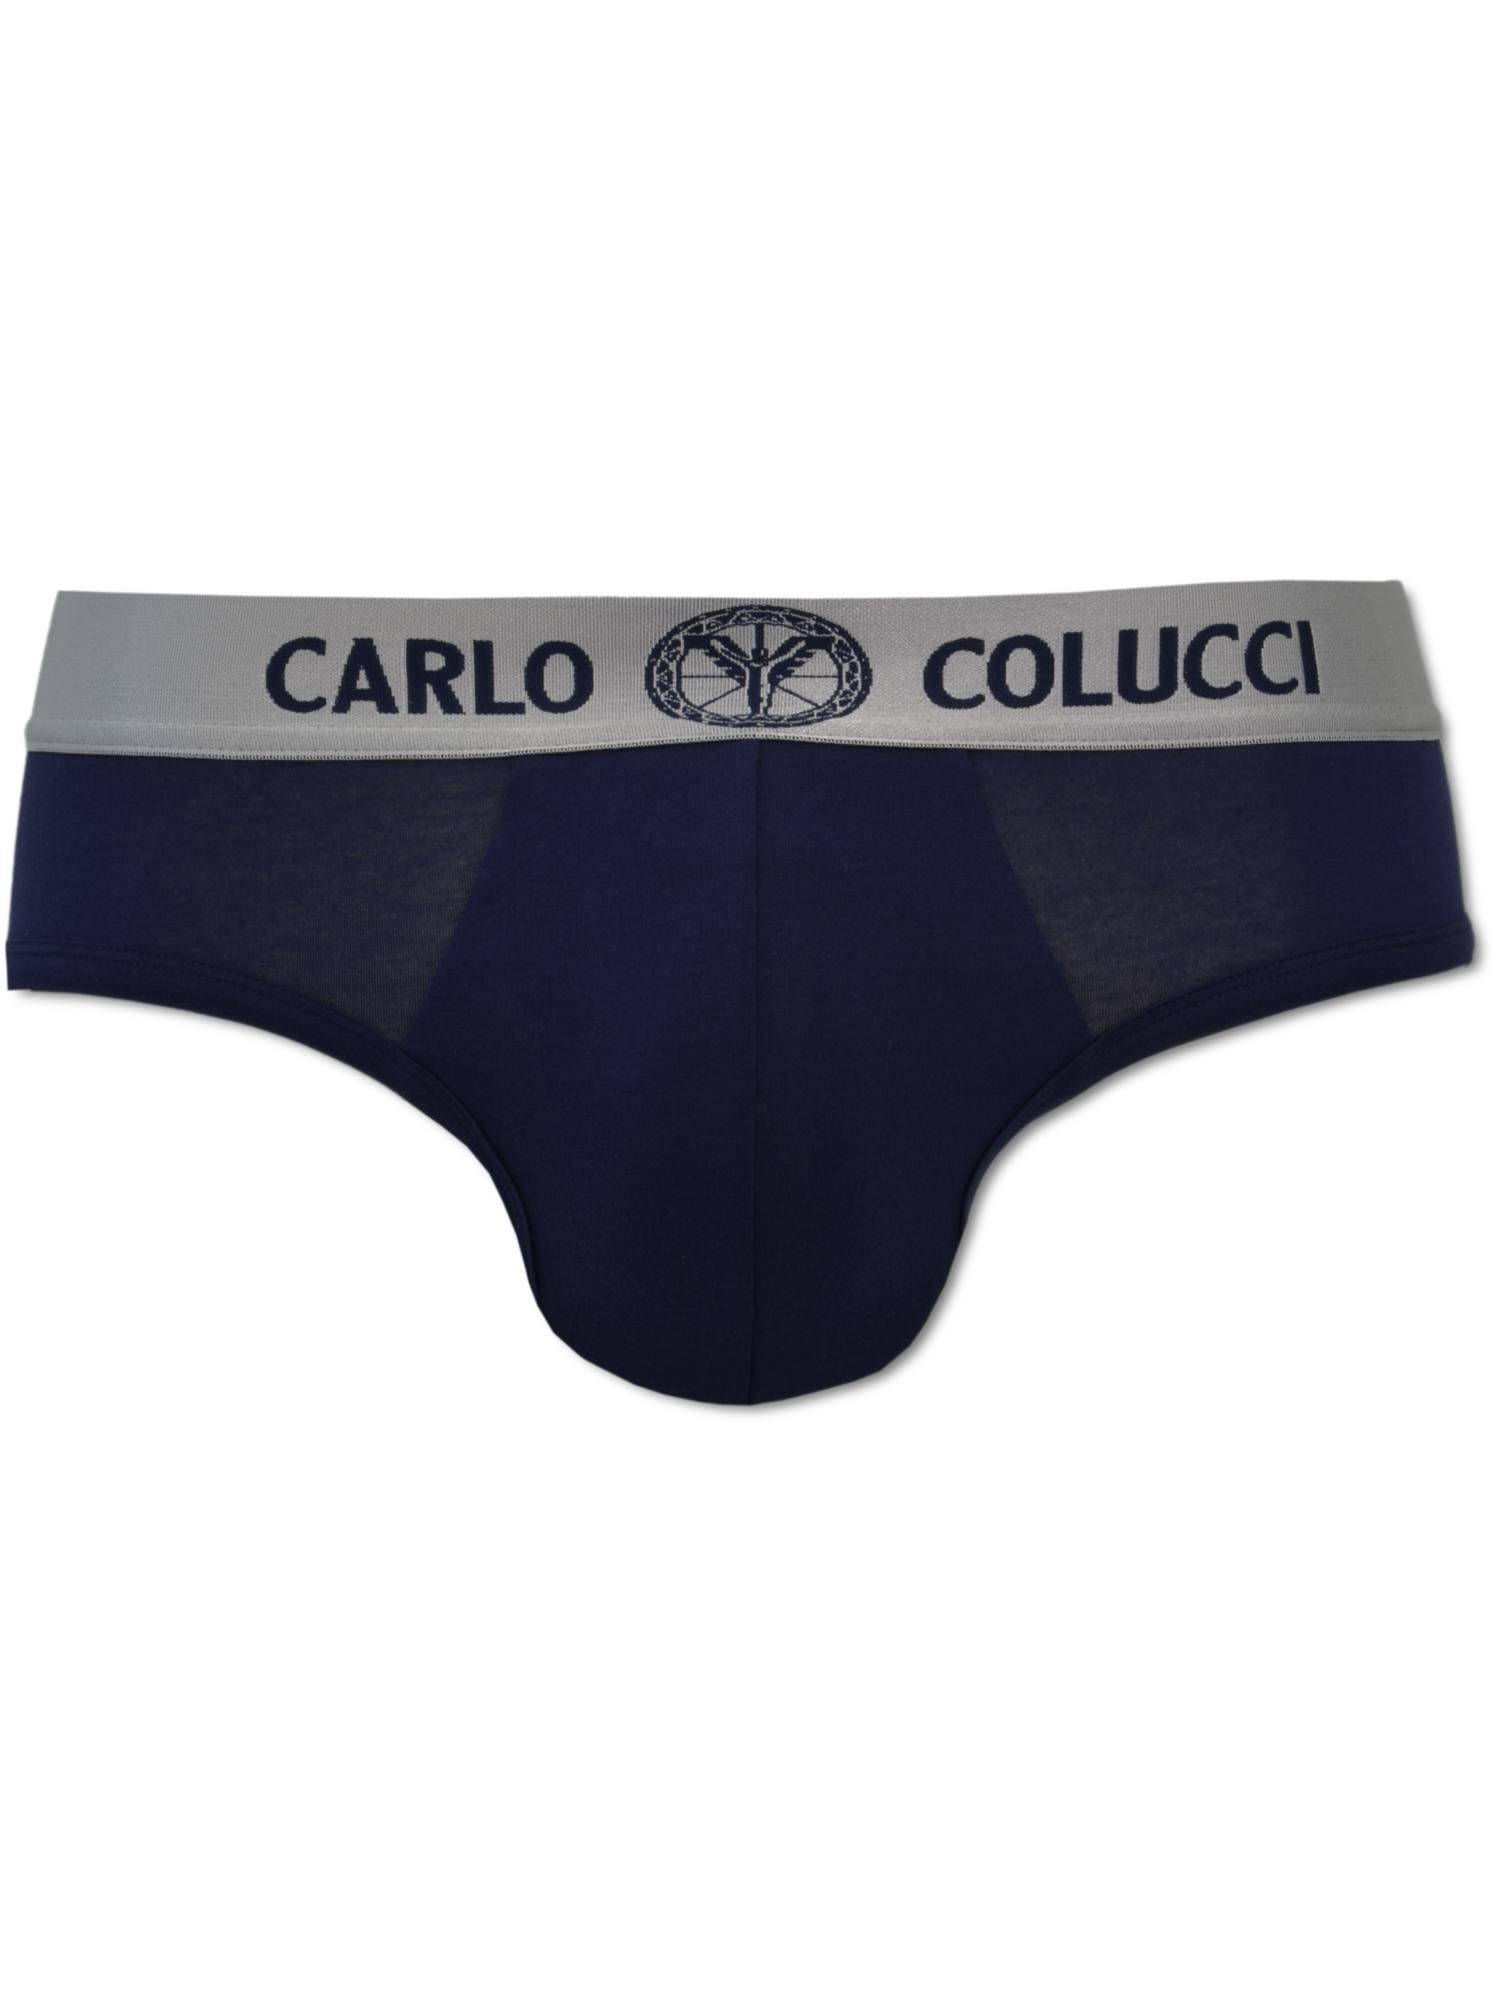 CARLO COLUCCI Slip Navy Cavaggion